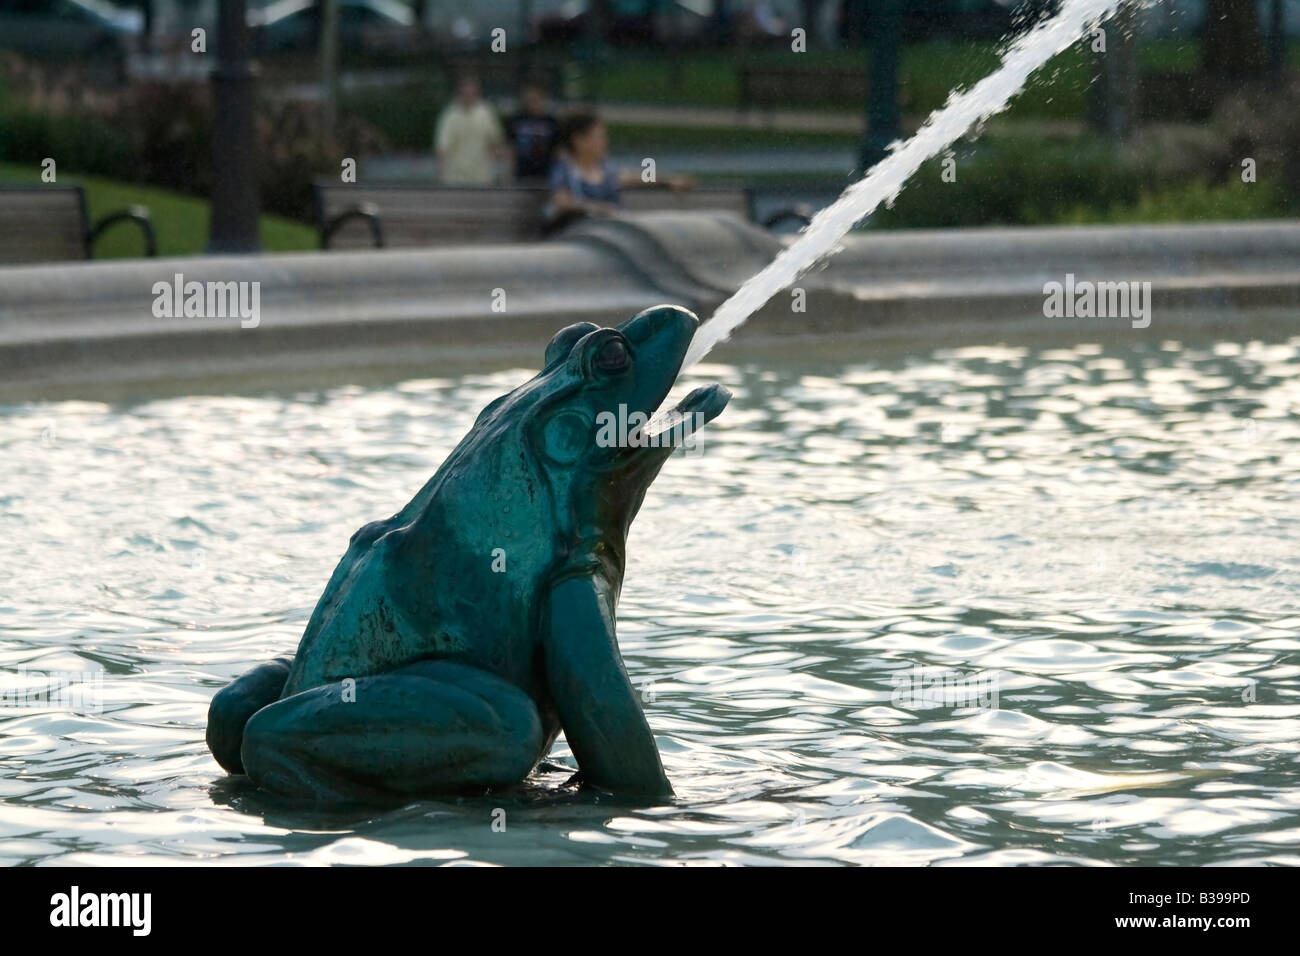 Une statue d'une grenouille est visible dans le Swann Memorial Fountain à Logan Square, Philadelphie, Pennsylvanie Banque D'Images